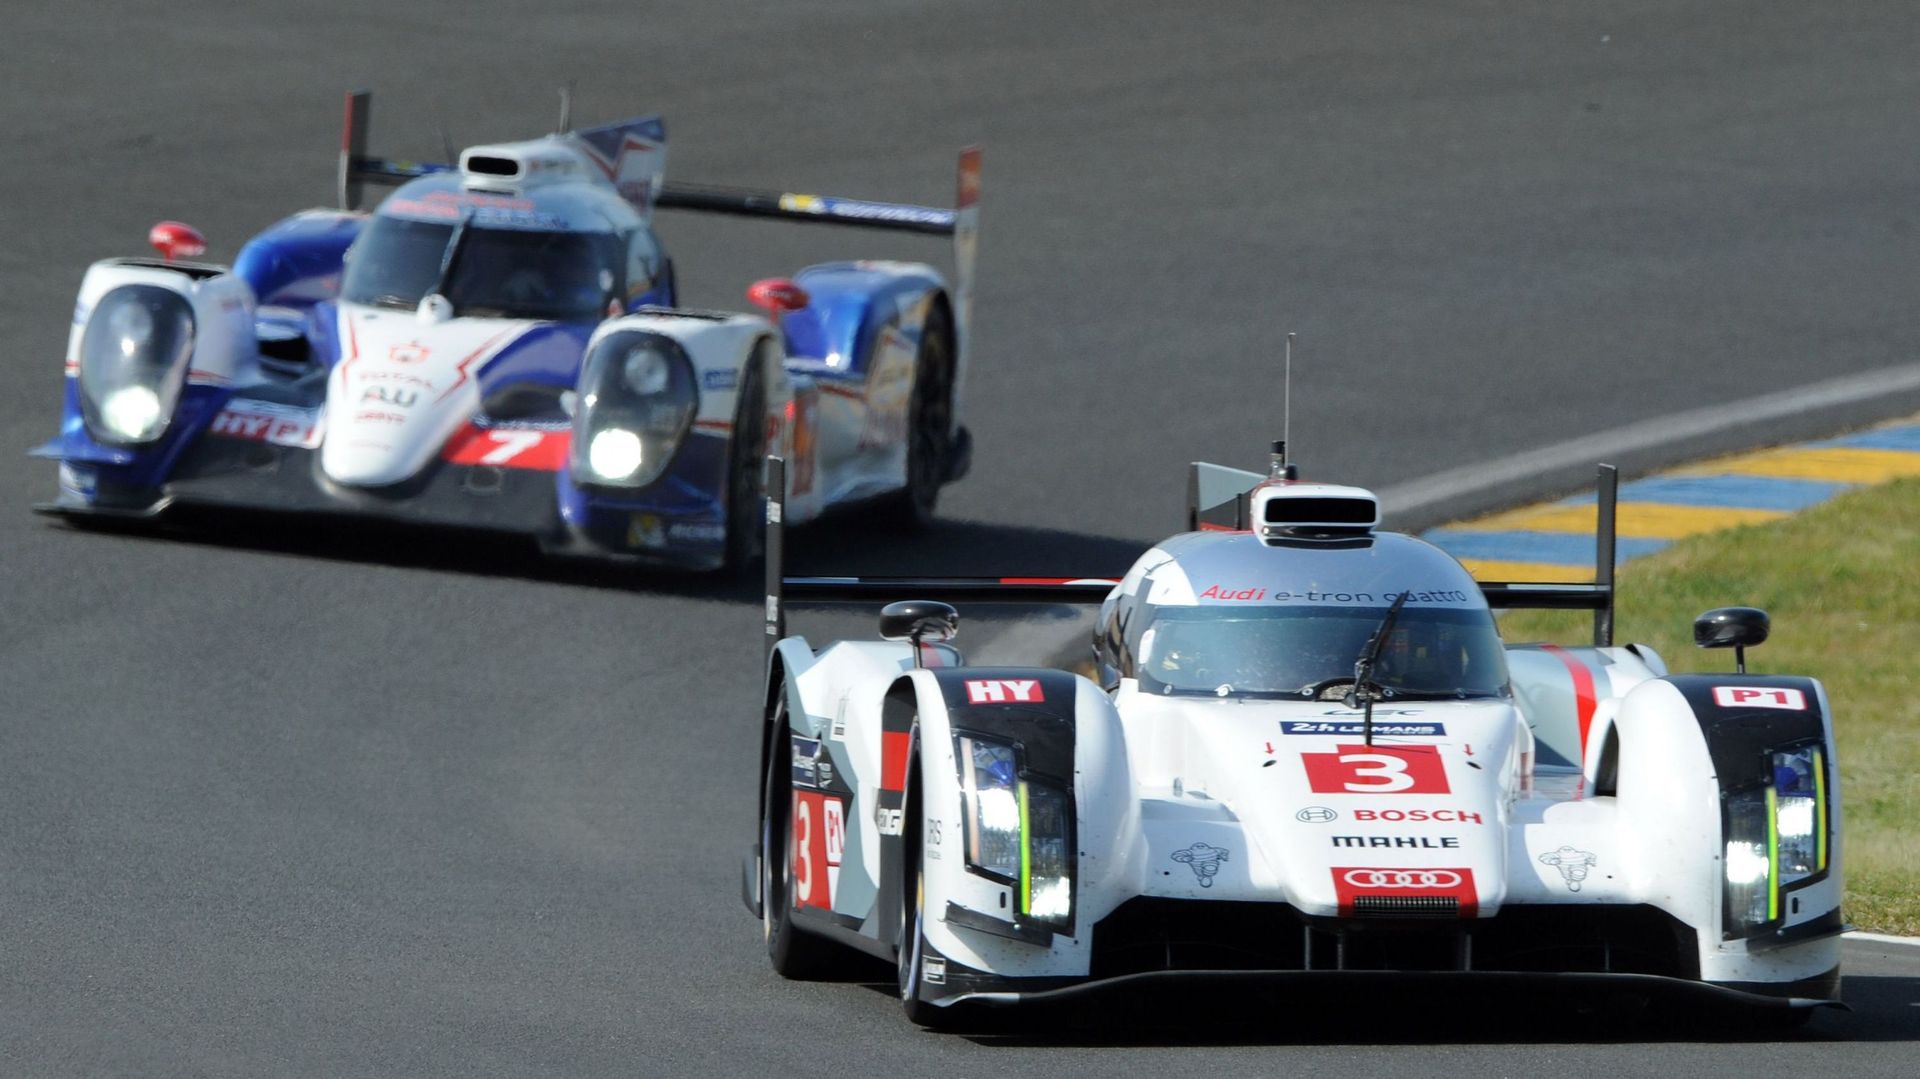 Moteurs: Audi meillleur temps du matin aux tests des 24h du Mans